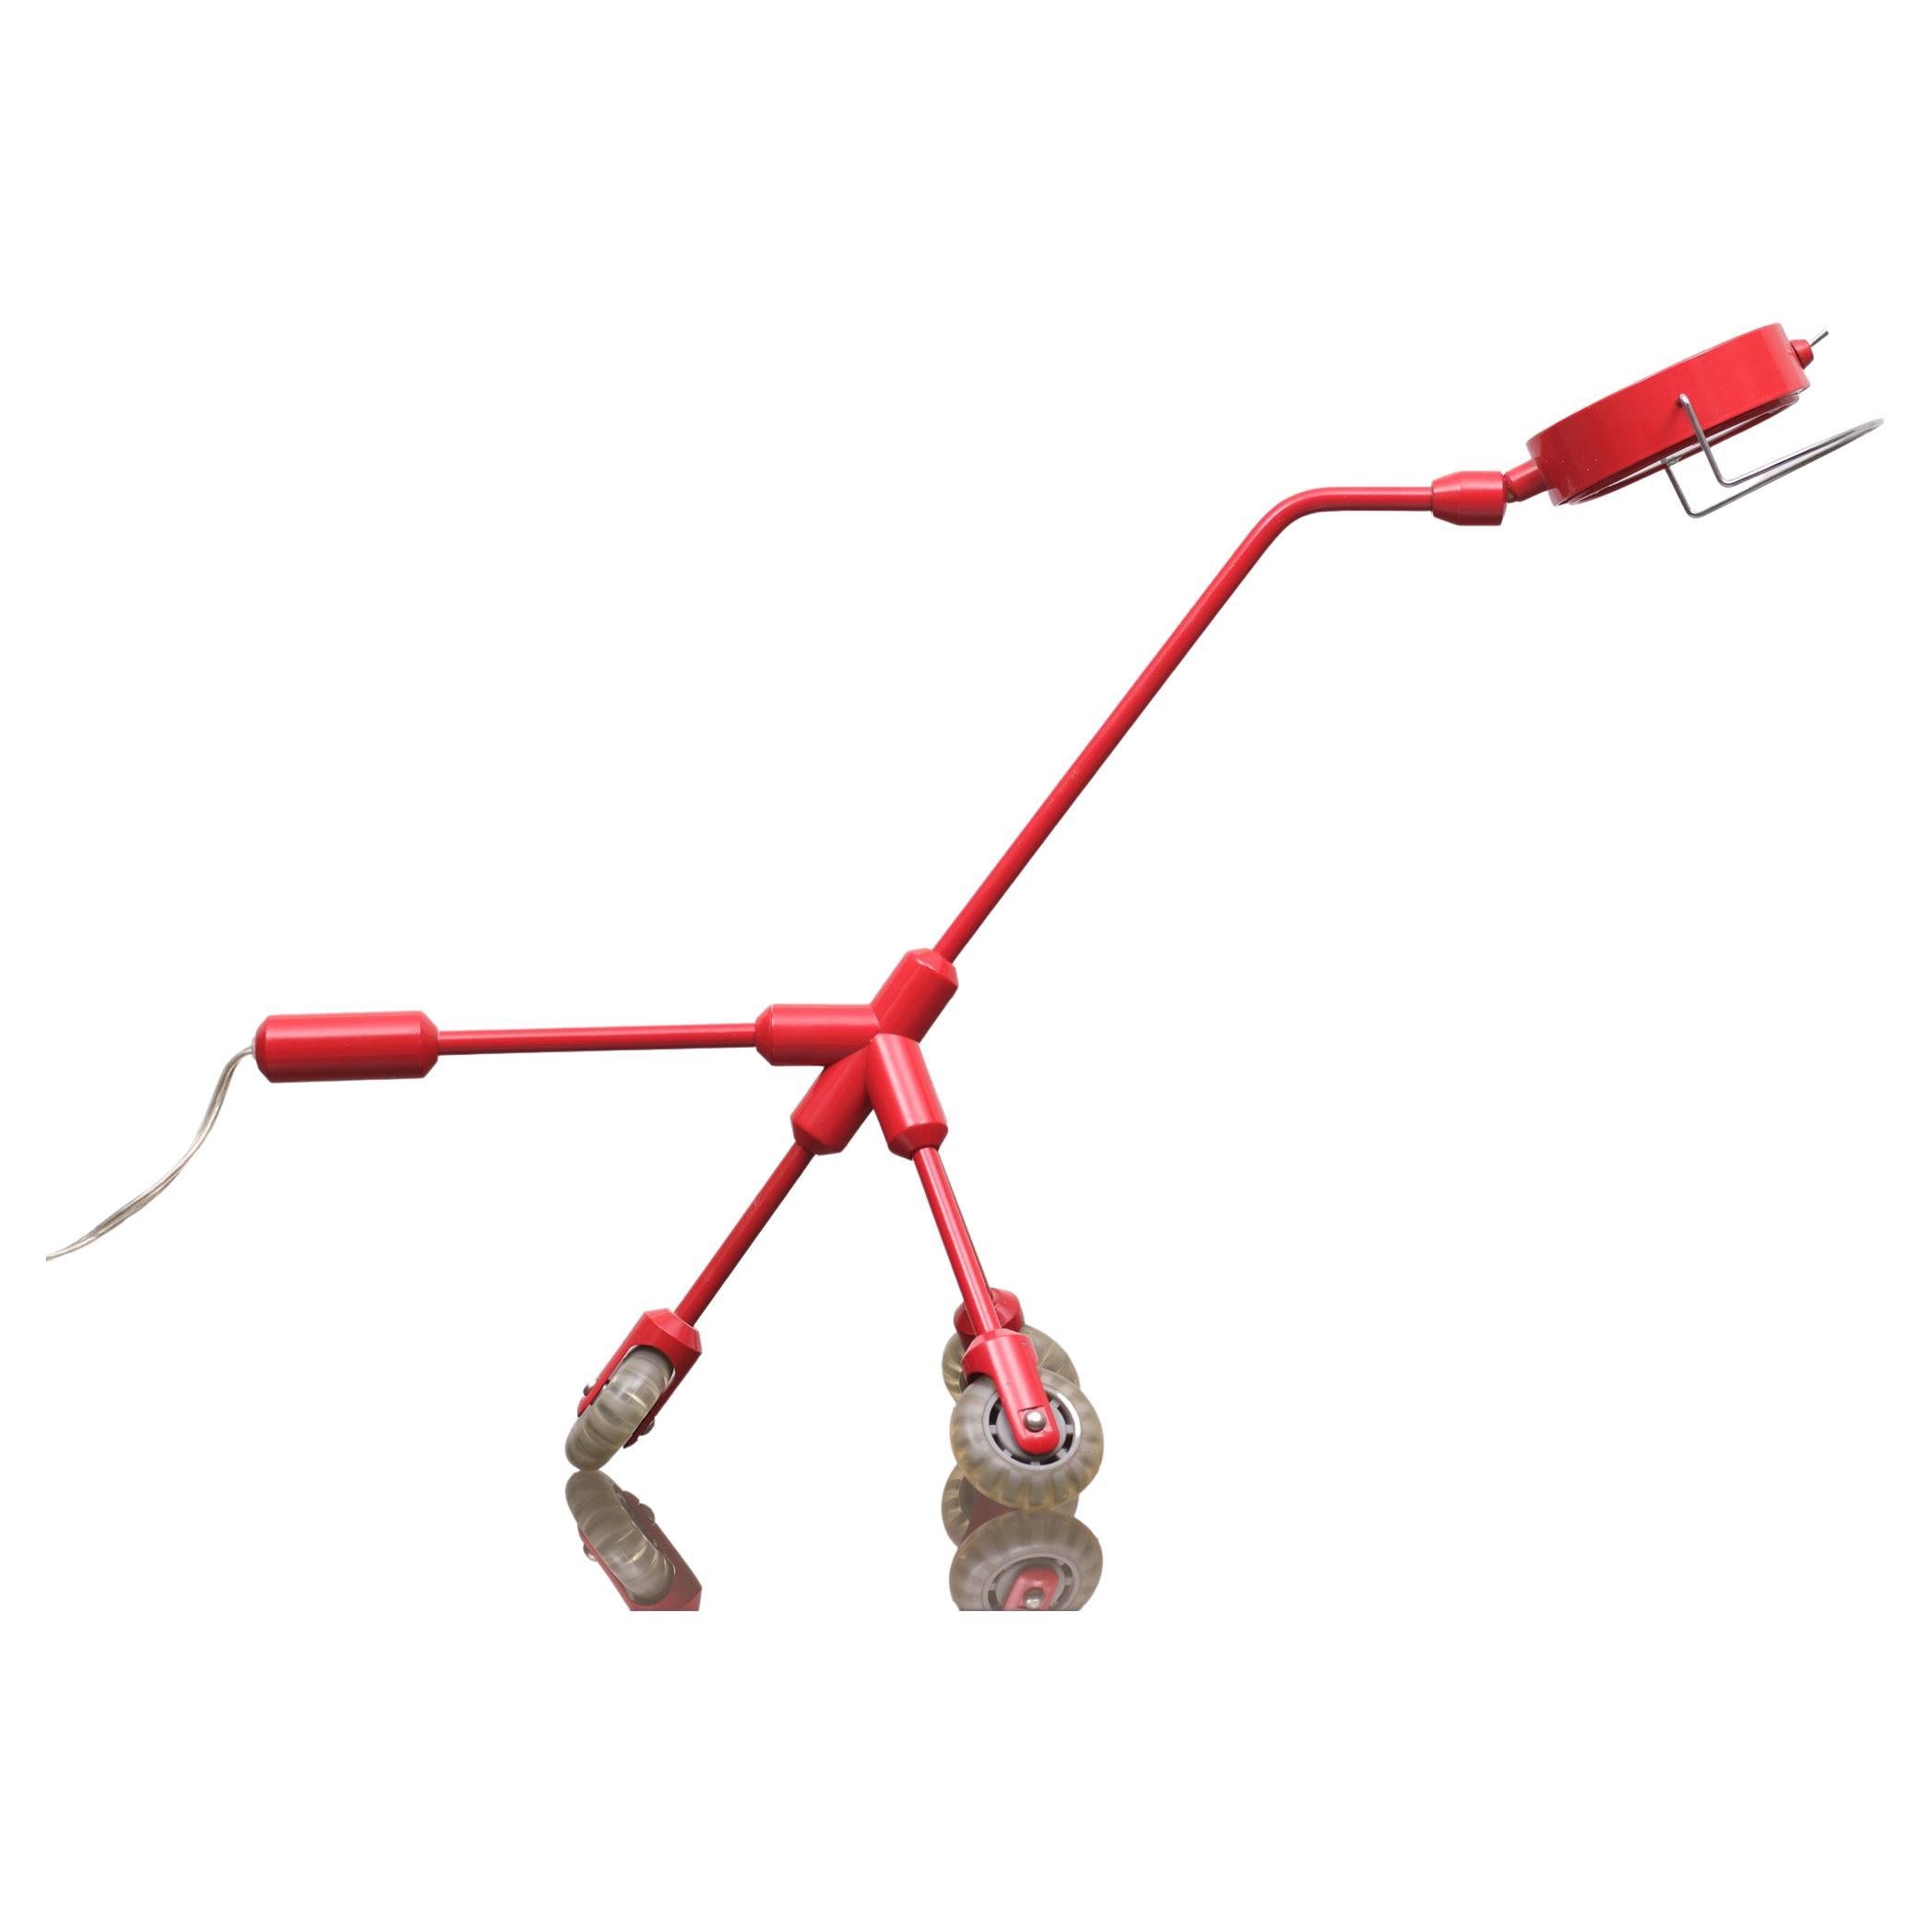 Lampe de table modèle Kila Red Dog a été conçue par Harry Allen pour Ikea.
Il s'est inspiré de son long intérêt pour le patinage sur rouleau.
Les trois roues en caoutchouc soutiennent la lampe et tournent en cercles.
Vous pouvez tourner